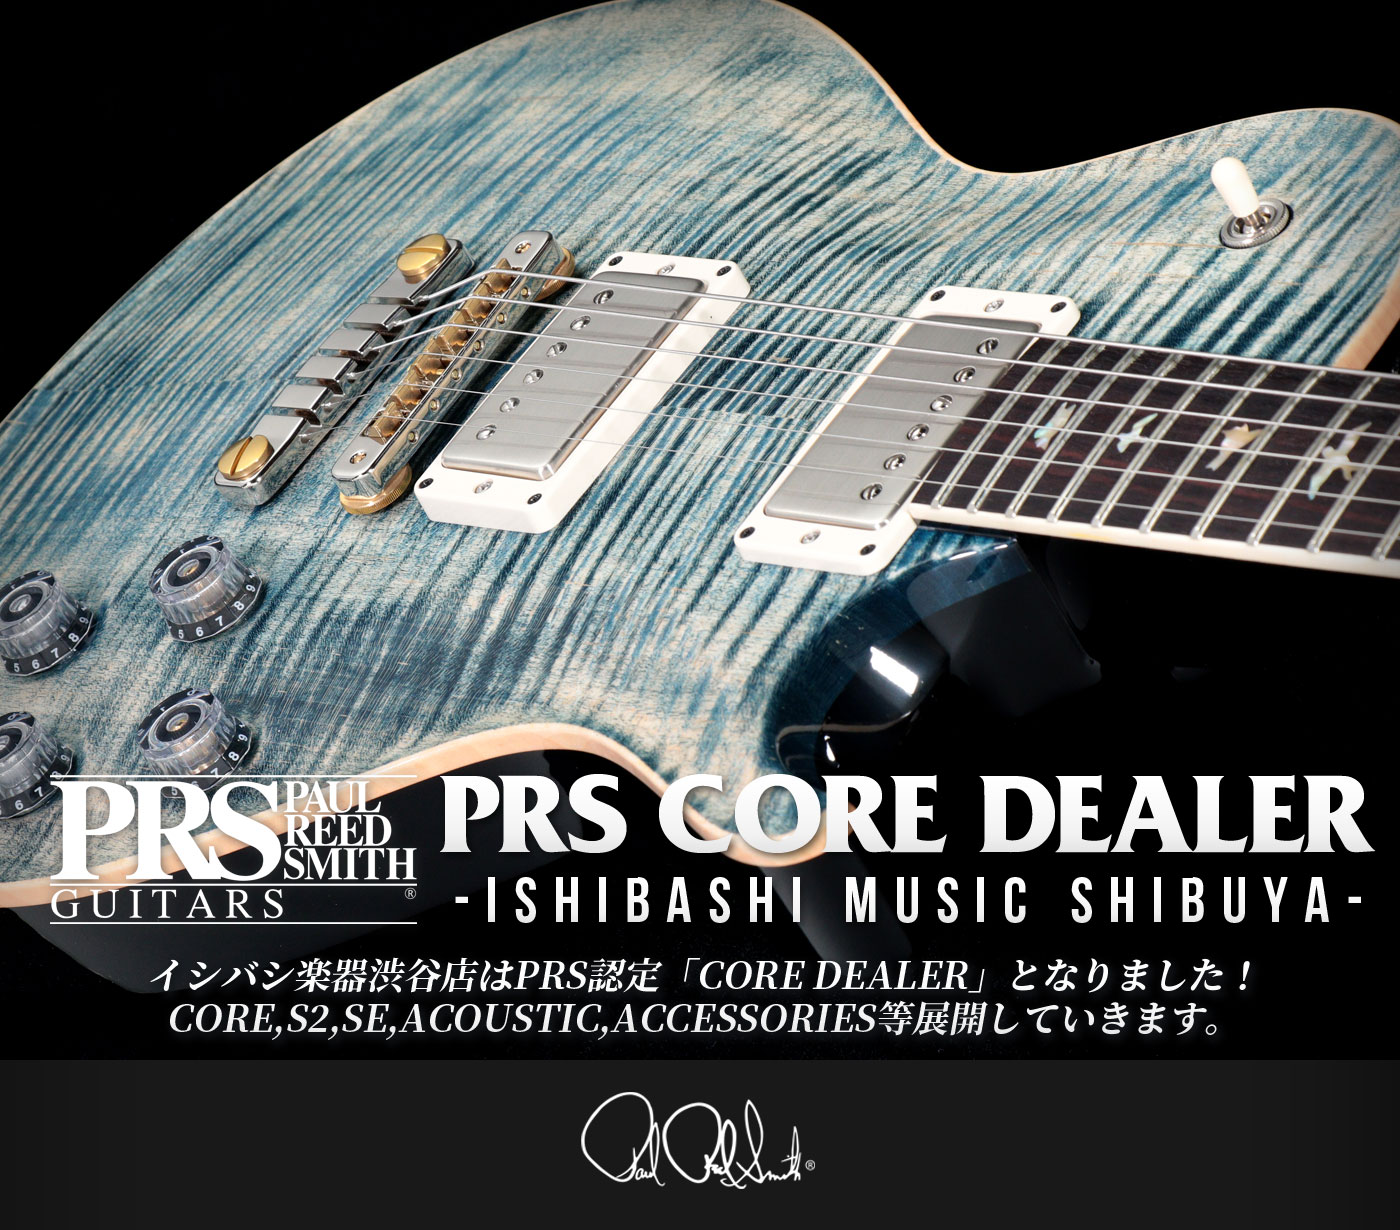 渋谷店 Paul Reed Smith (PRS) Guitars ポールリードスミス